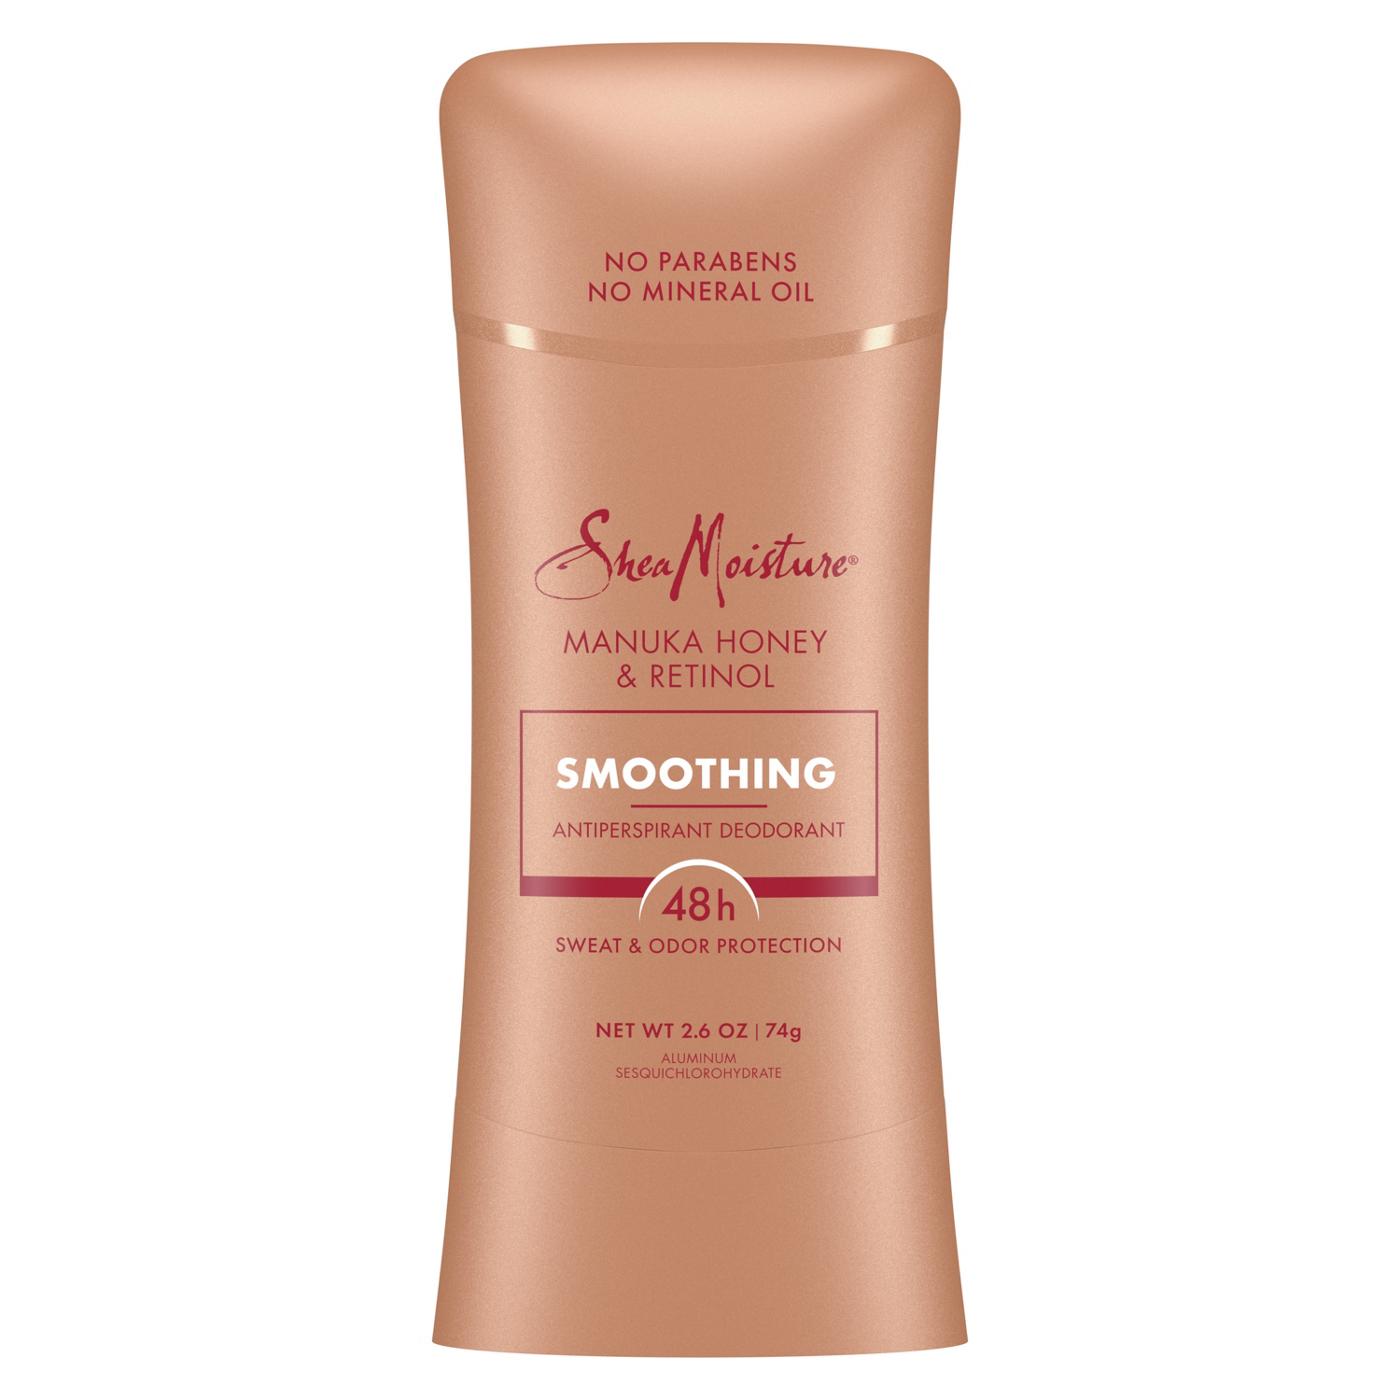 SheaMoisture Smoothing Antiperspirant Deodorant - Manuka Honey & Retinol; image 1 of 9